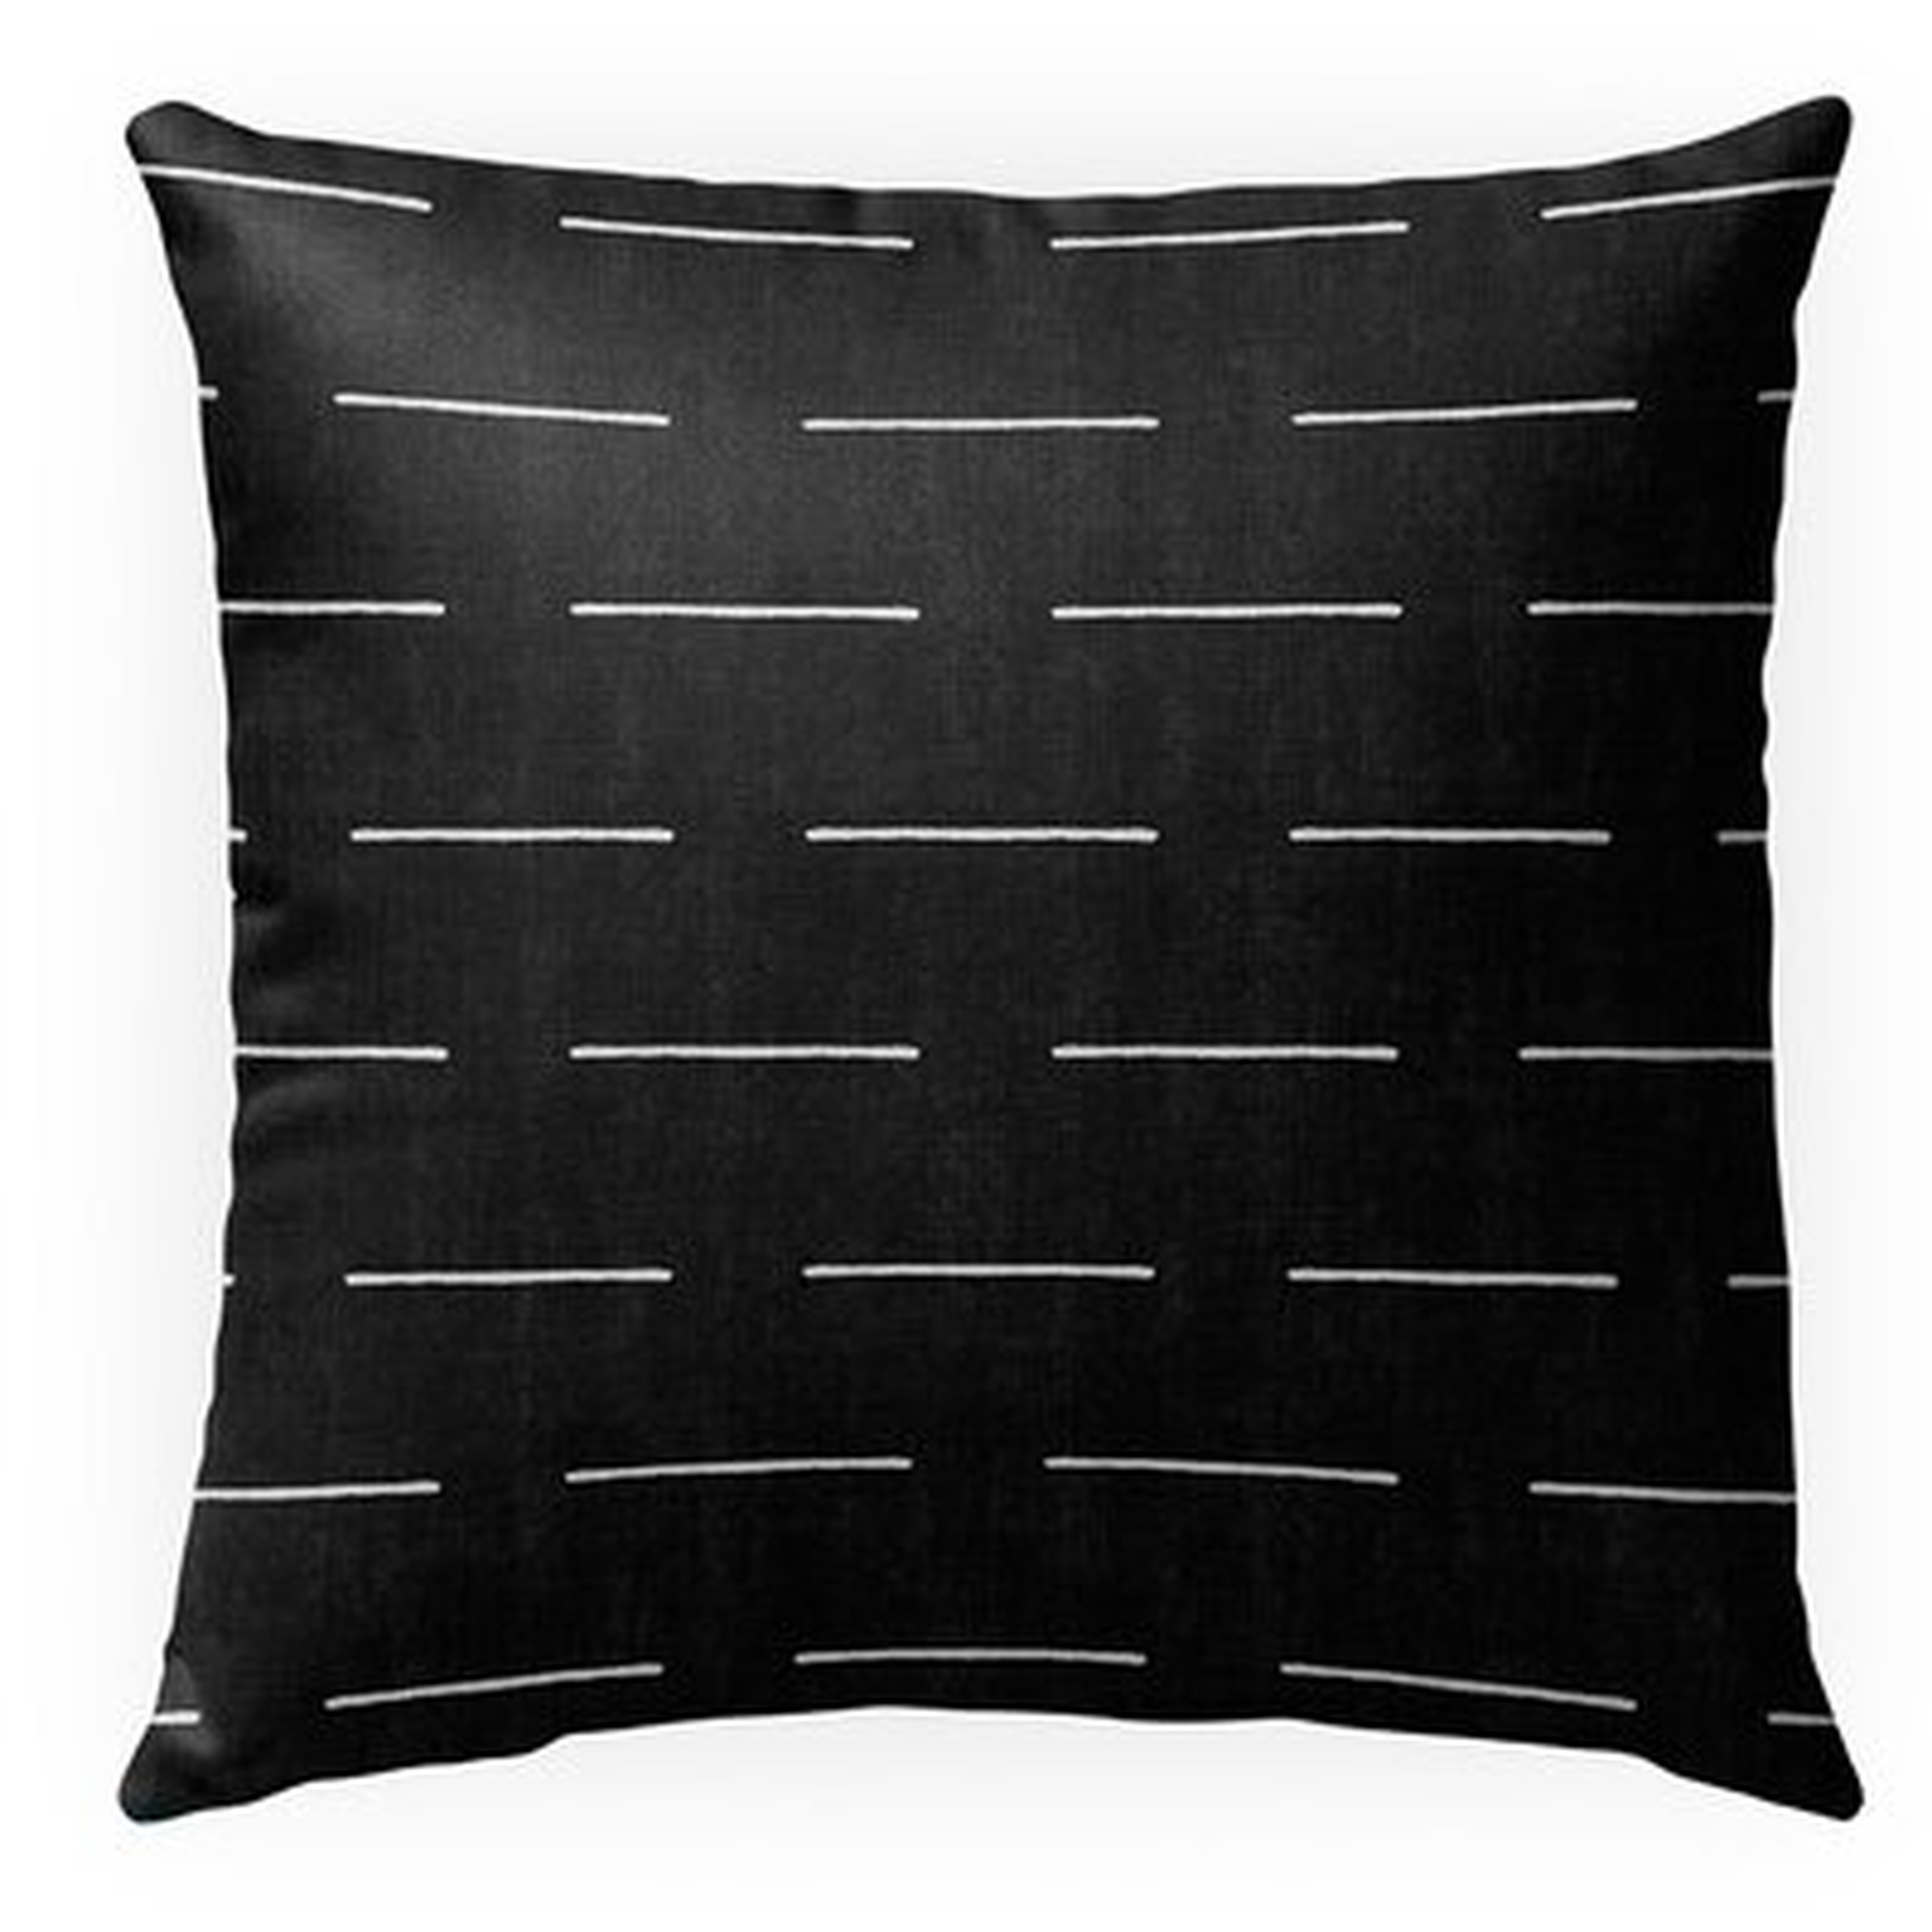 Gere Cotton Indoor / Outdoor Pillow - Wayfair